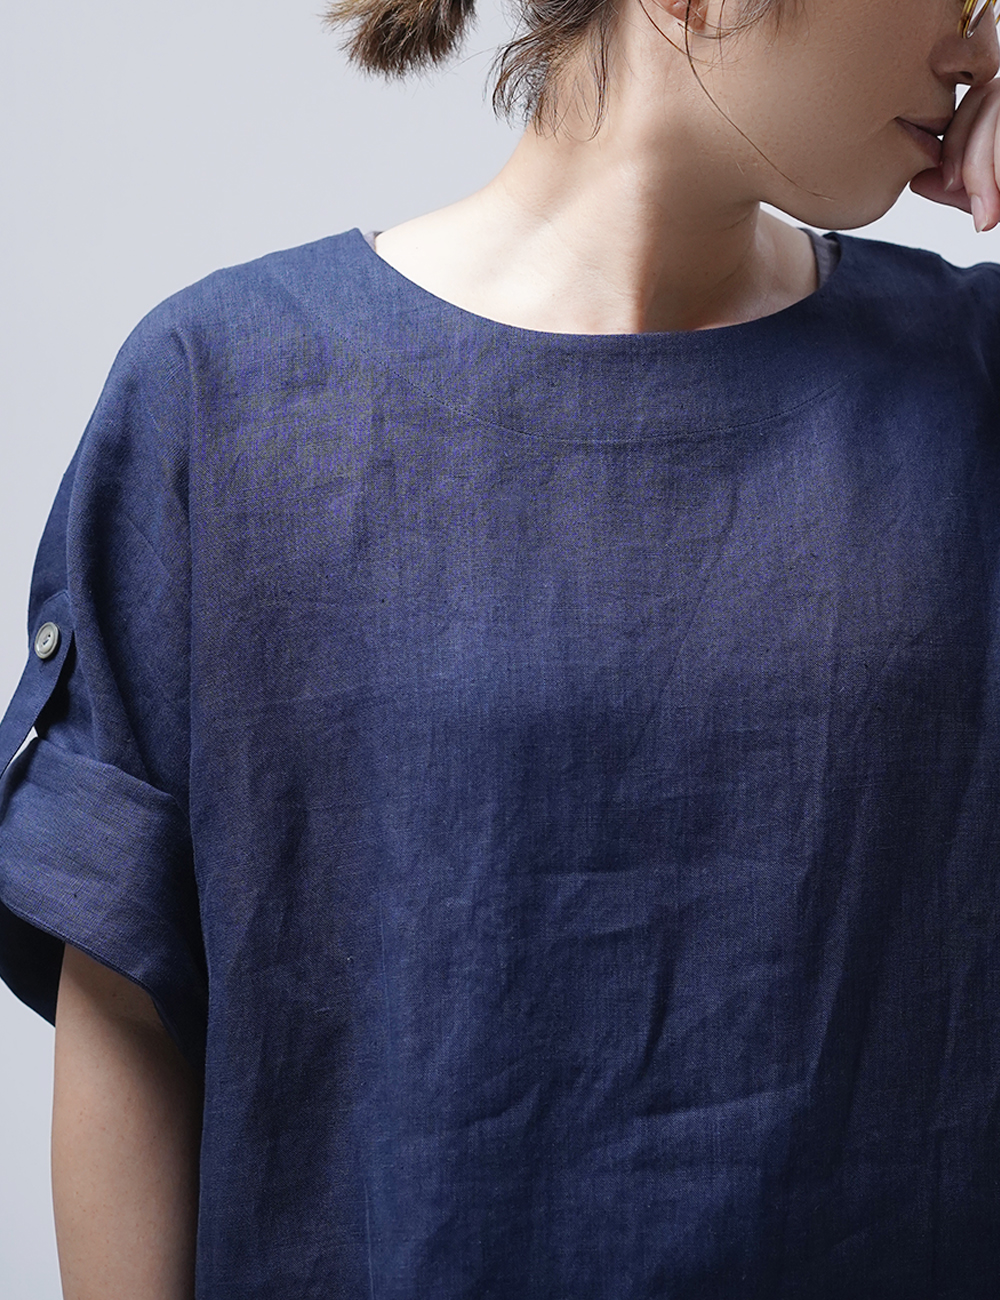 【リネントップス】風が通る ロールアップTシャツ/留紺(とめこん) t041k-tmk1